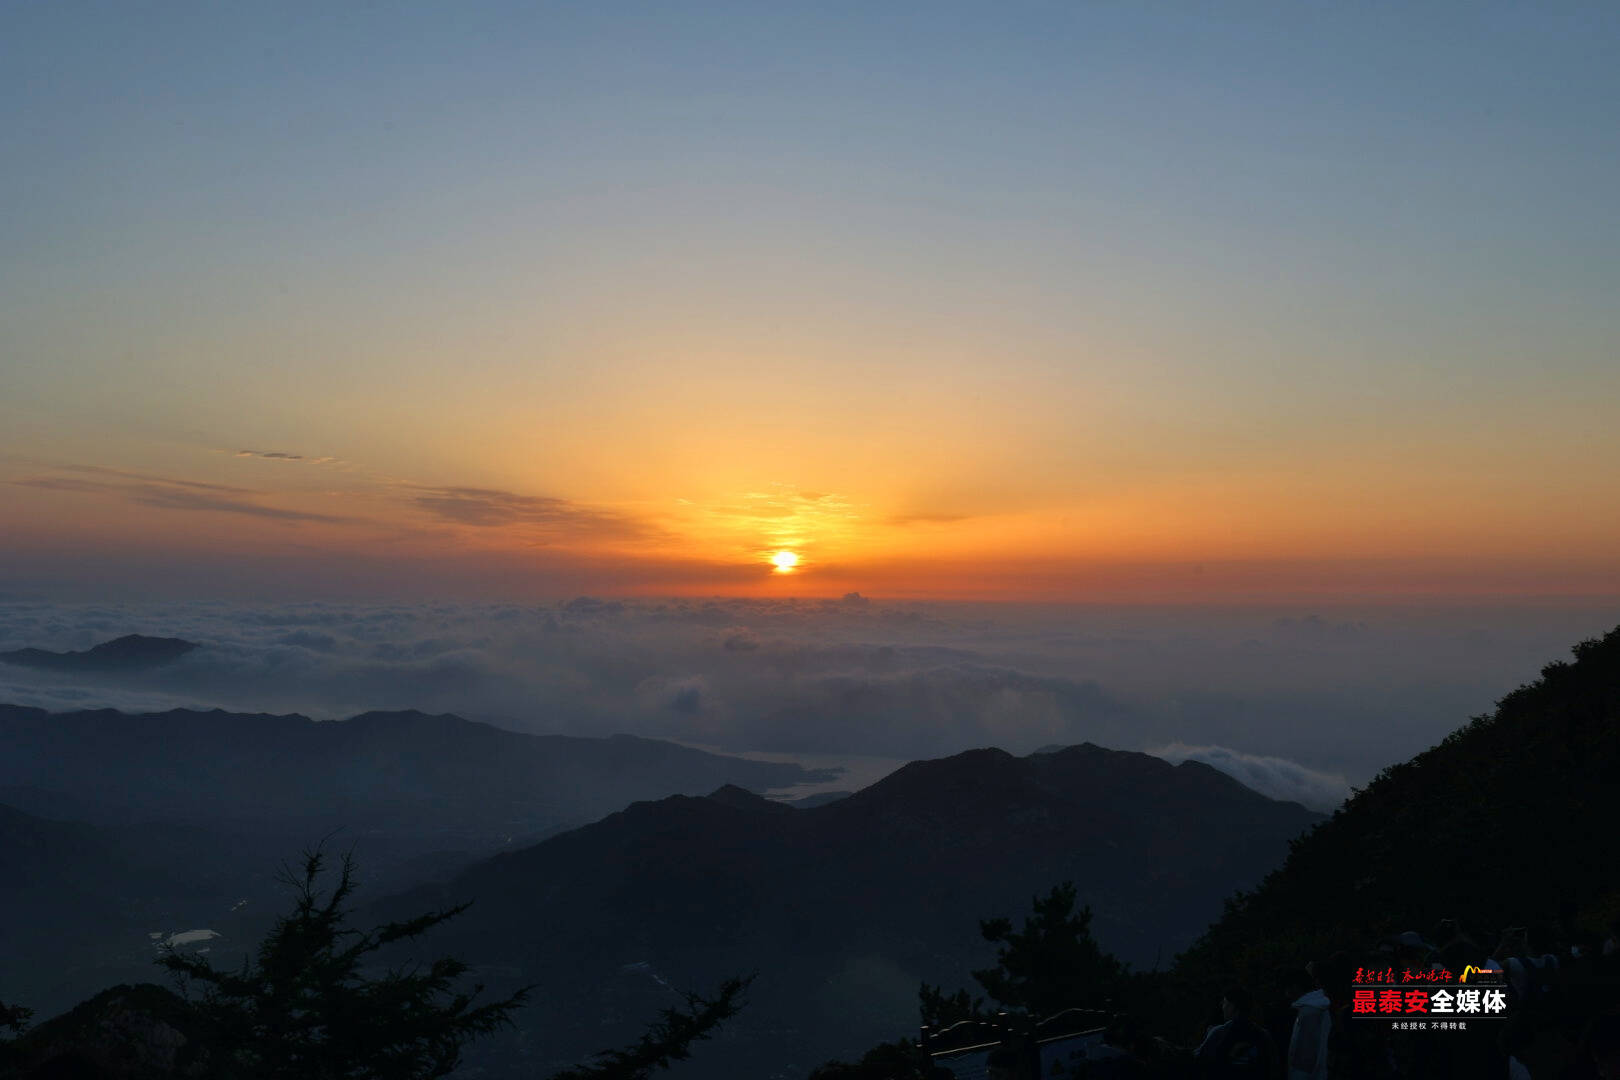 天下泰山丨日出东方 霞光溢彩